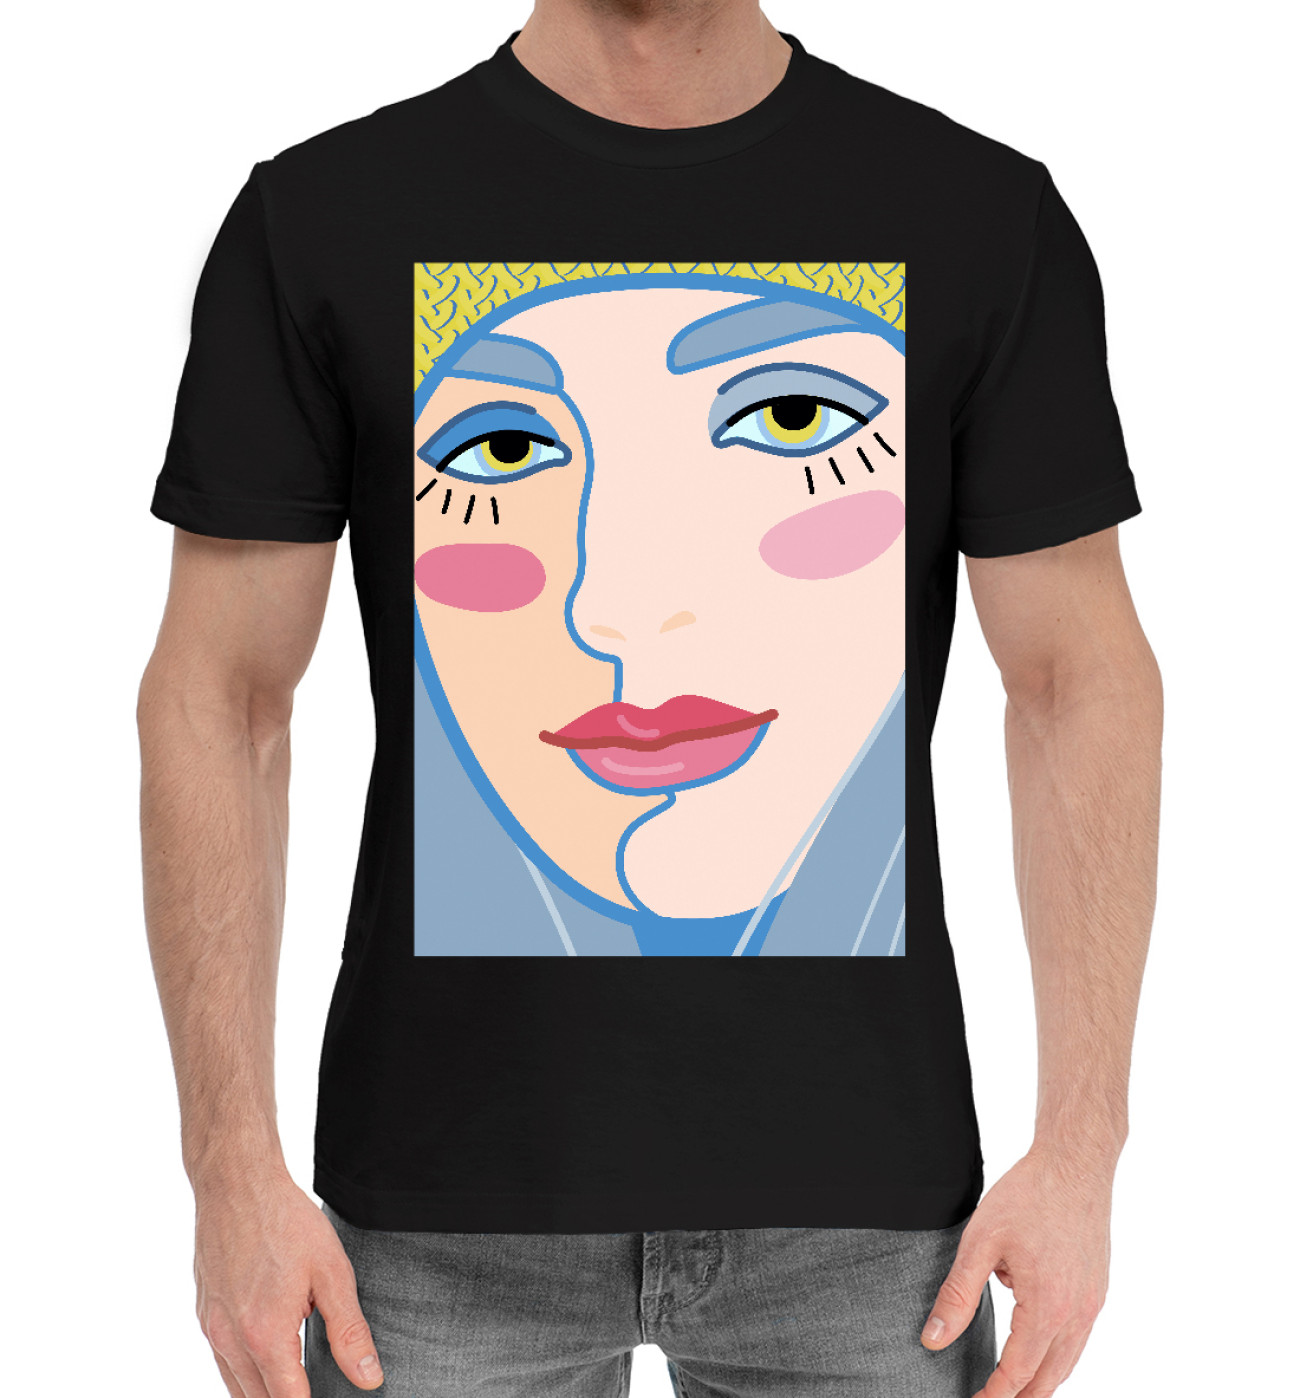 Мужская Хлопковая футболка Женское лицо с яркими губами, артикул: DVU-852233-hfu-2